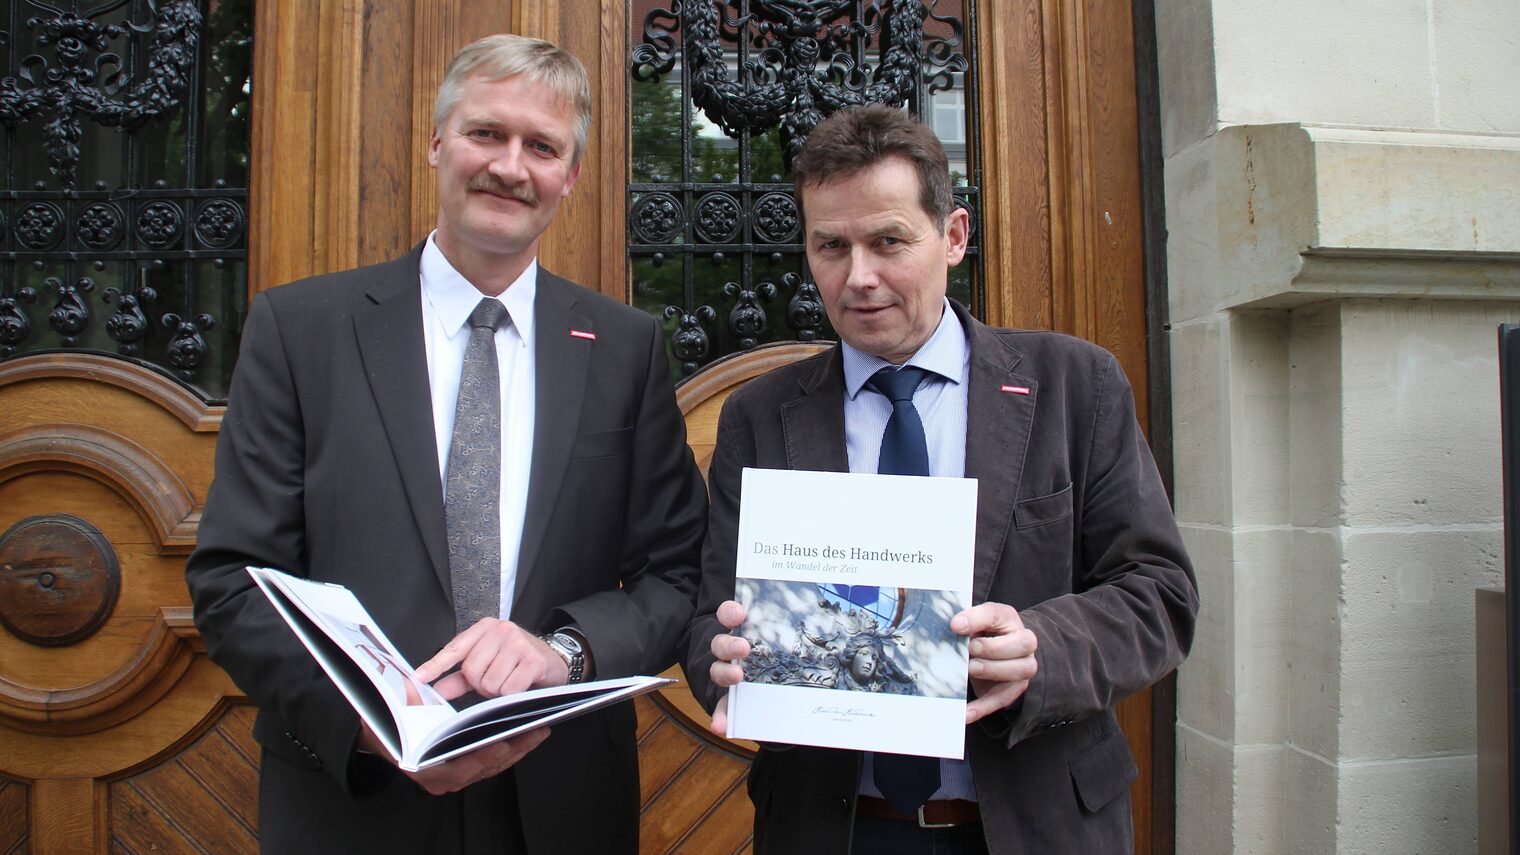 Handwerkskammer-Präsident Hagen Mauer (rechts) und Hauptgeschäftsführer Burghard Grupe präsentieren das Buch "Das Haus des Handwerks im Wandel der Zeit".